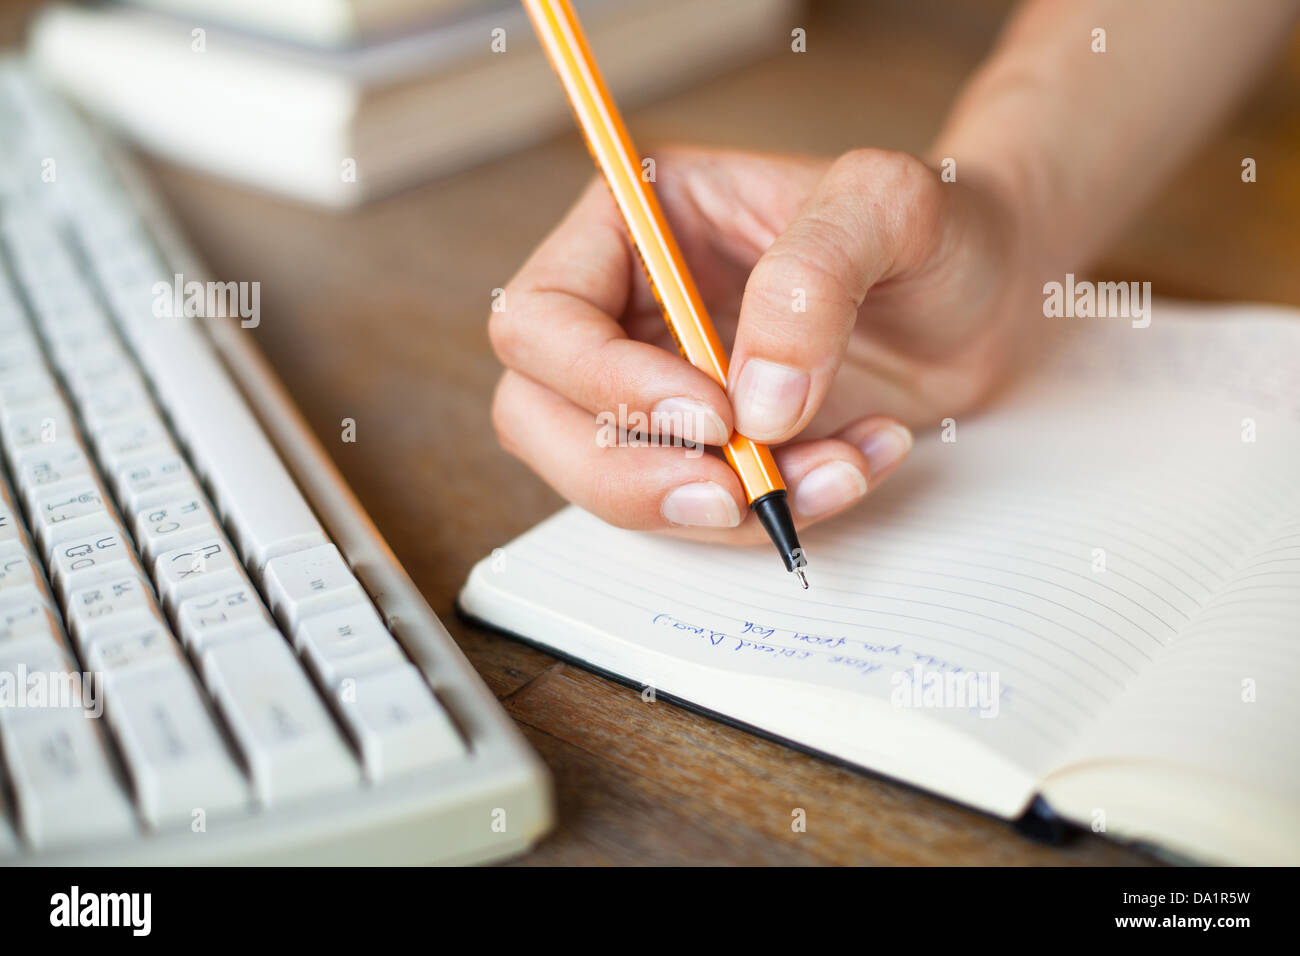 Händen schreibt einen Stift in einem Notebook, Computer-Tastatur im Hintergrund Stockfoto